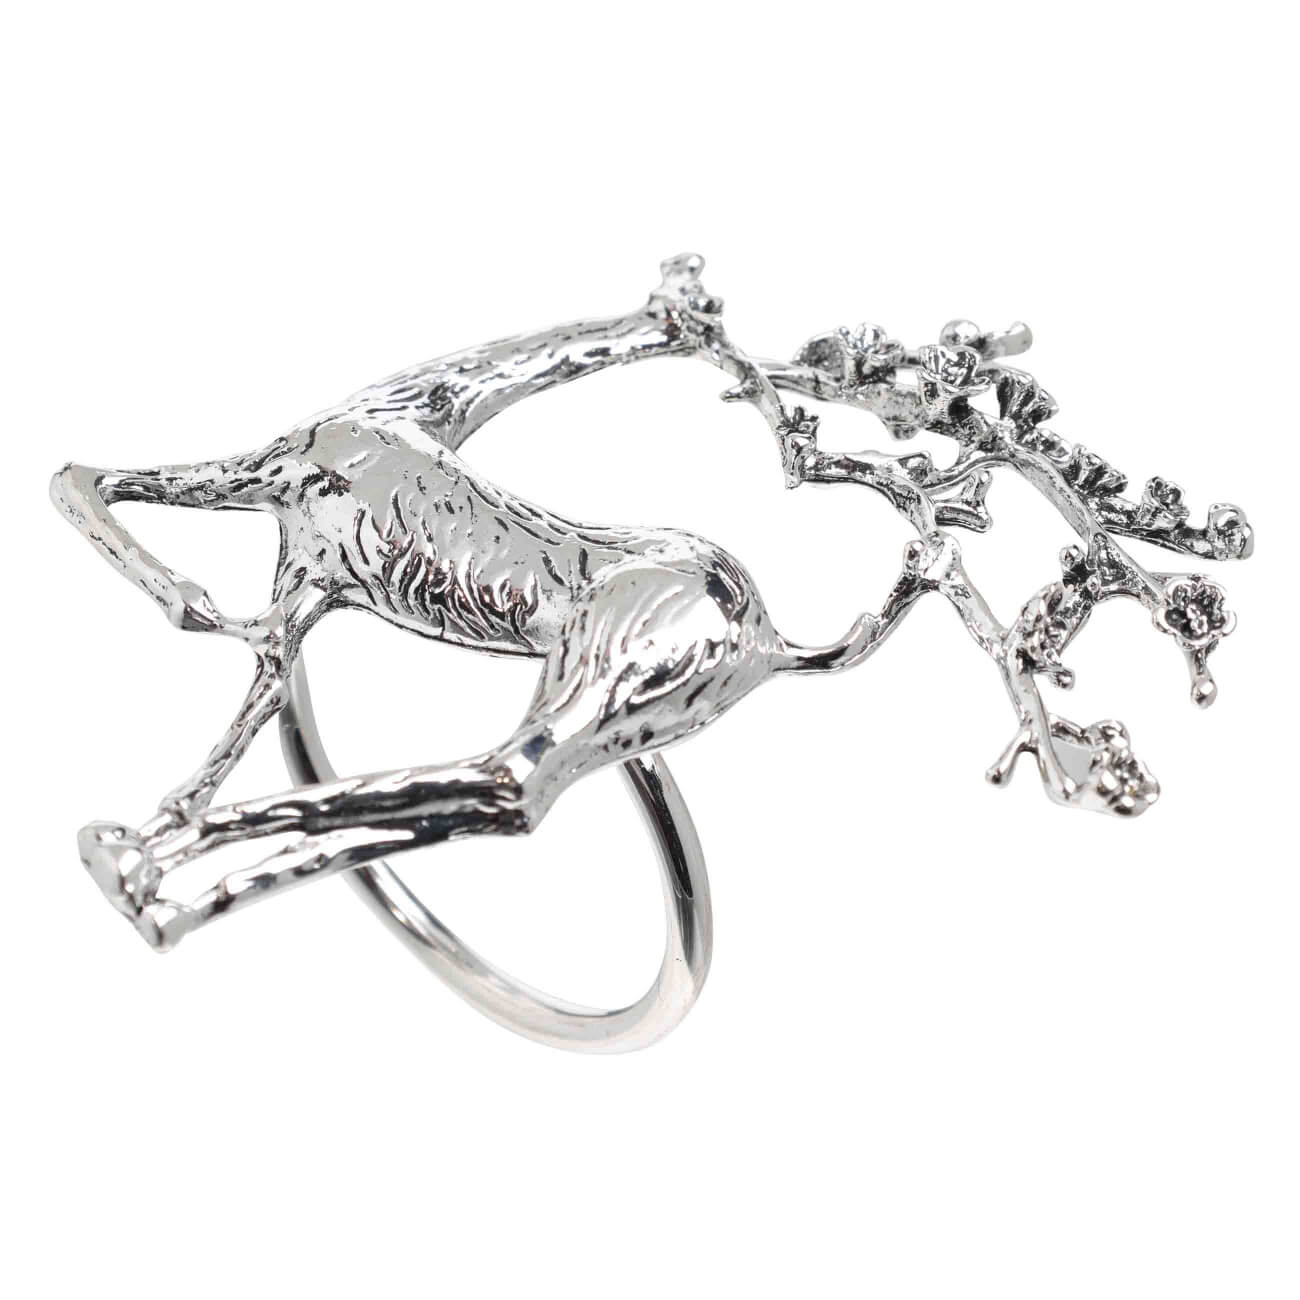 kuchenland кольцо для салфеток 5 см 2 шт металл серебристое кольцо fantastic r Кольцо для салфеток, 8 см, металл, серебристое, Олень с цветами на рогах, Winter deer